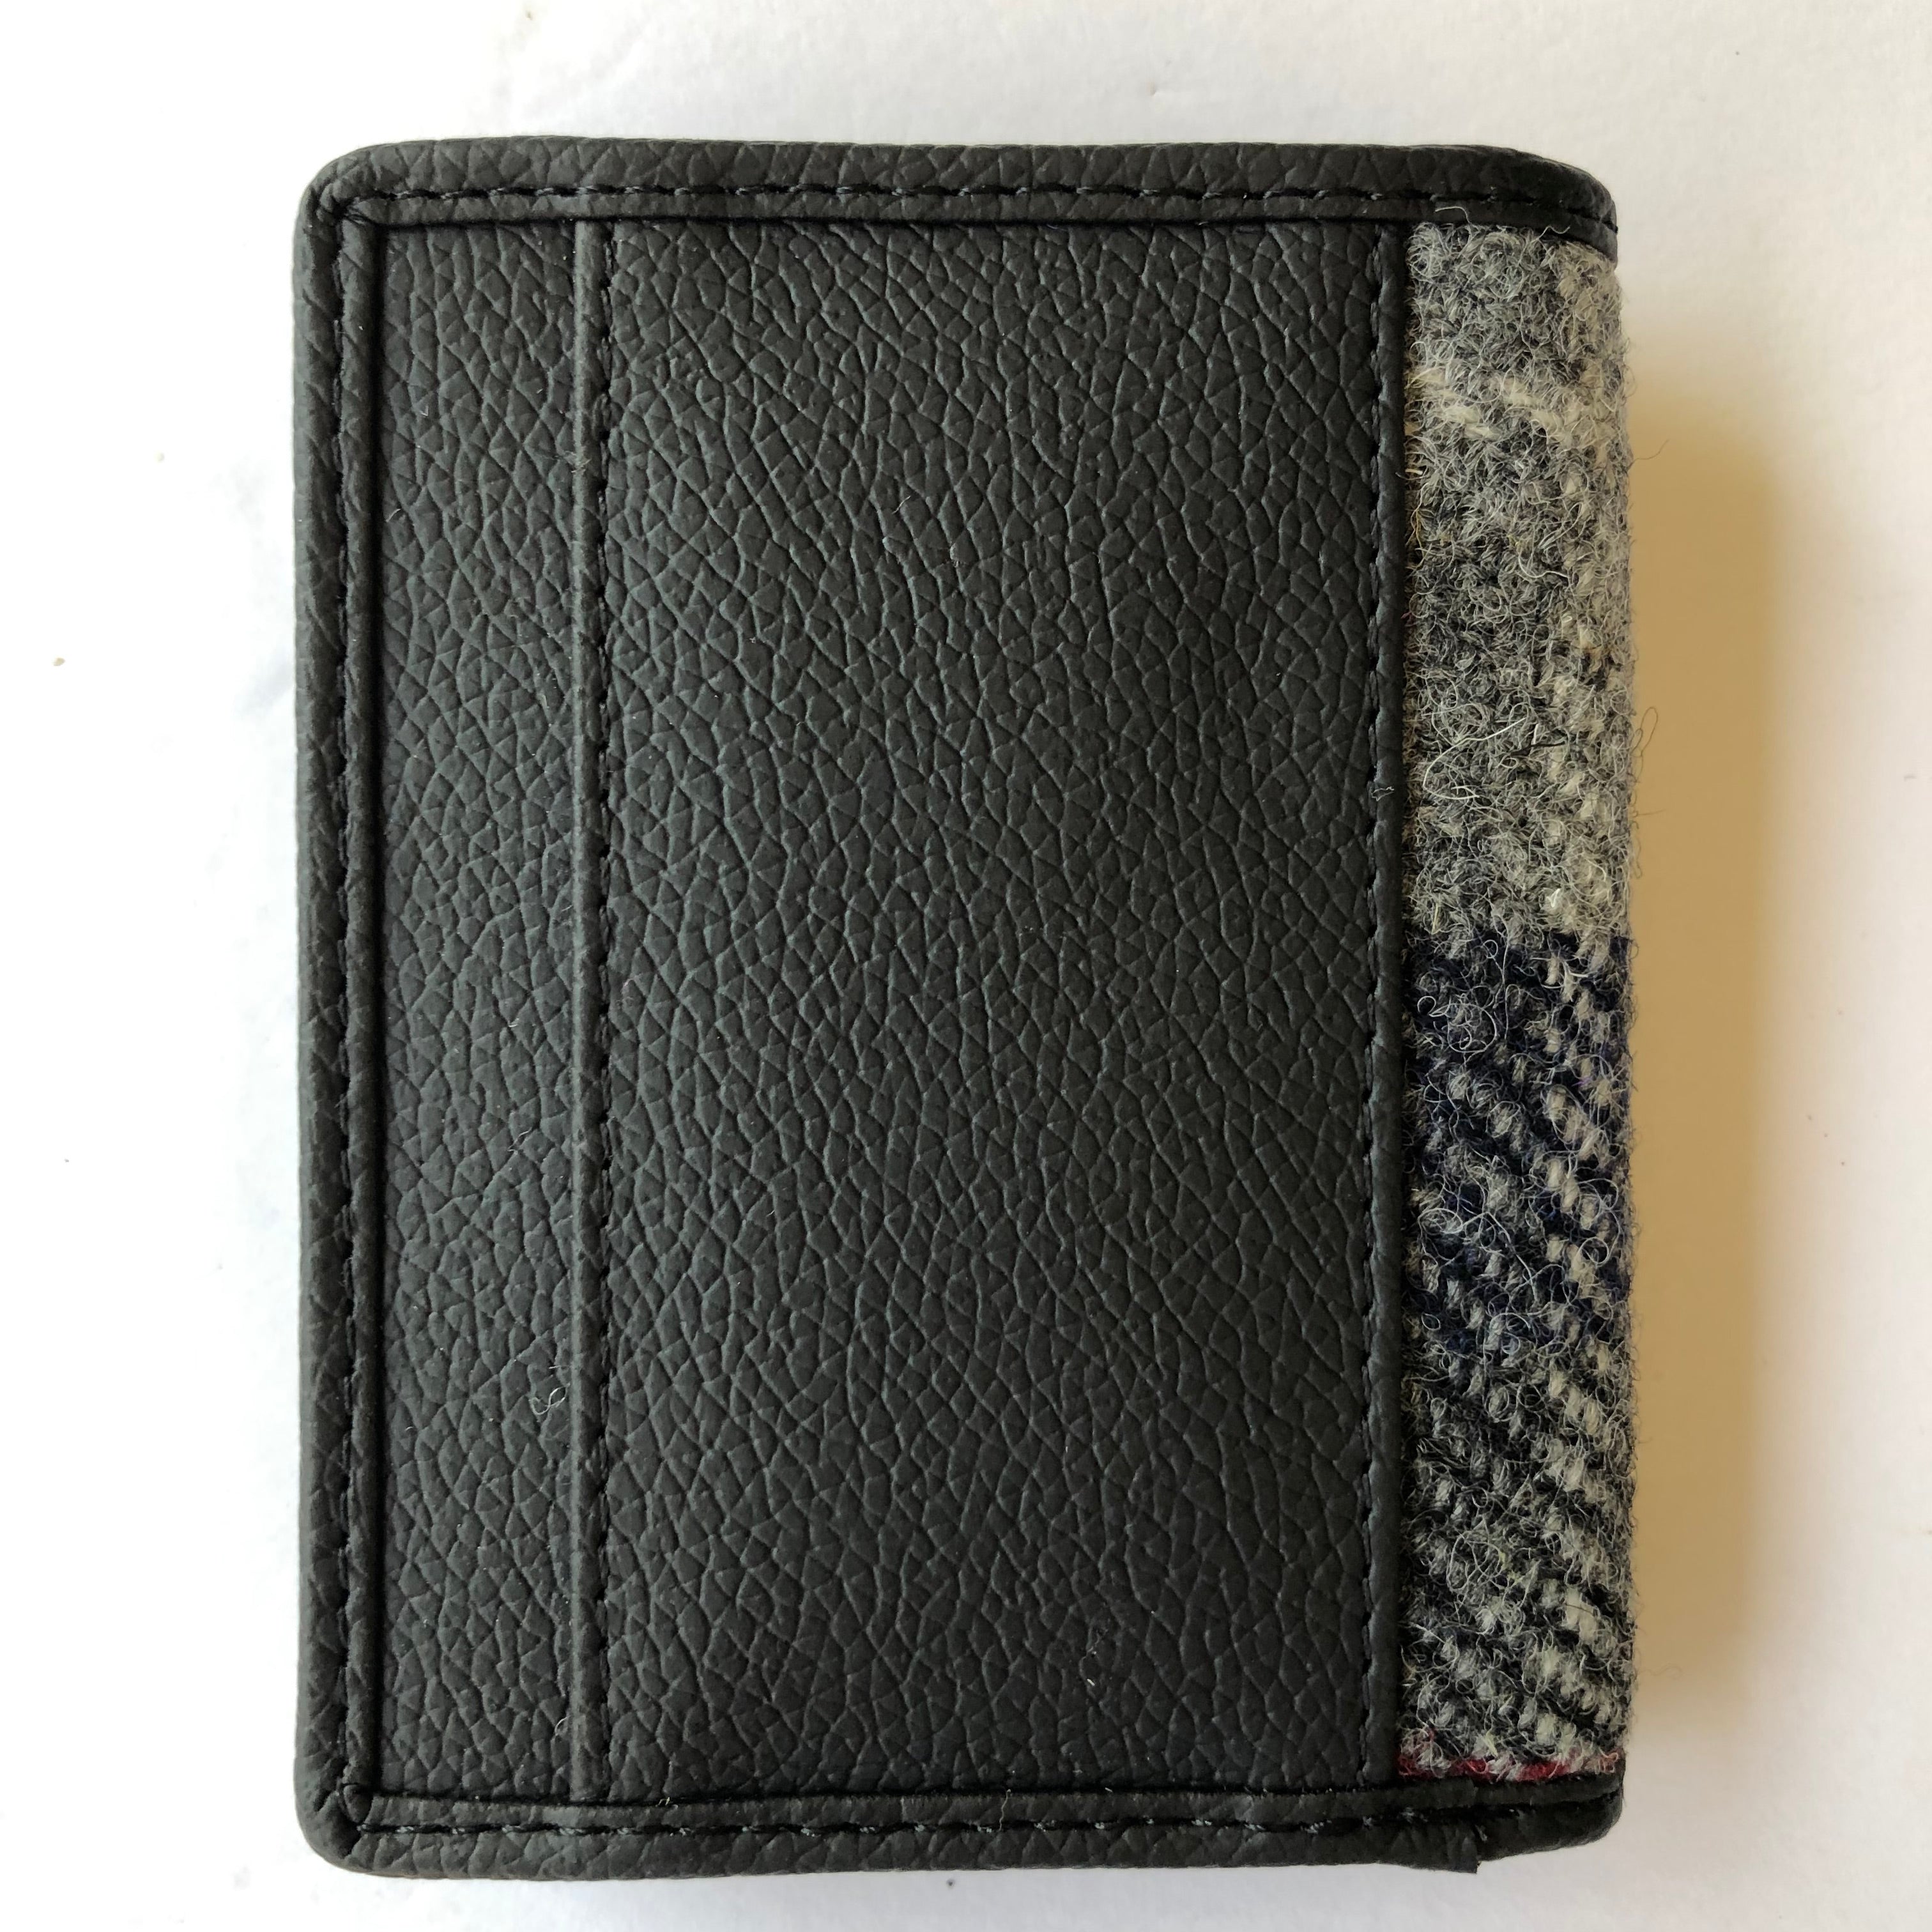 Harris Tweed Slim Bifold Wallet - Gray / Blue Check